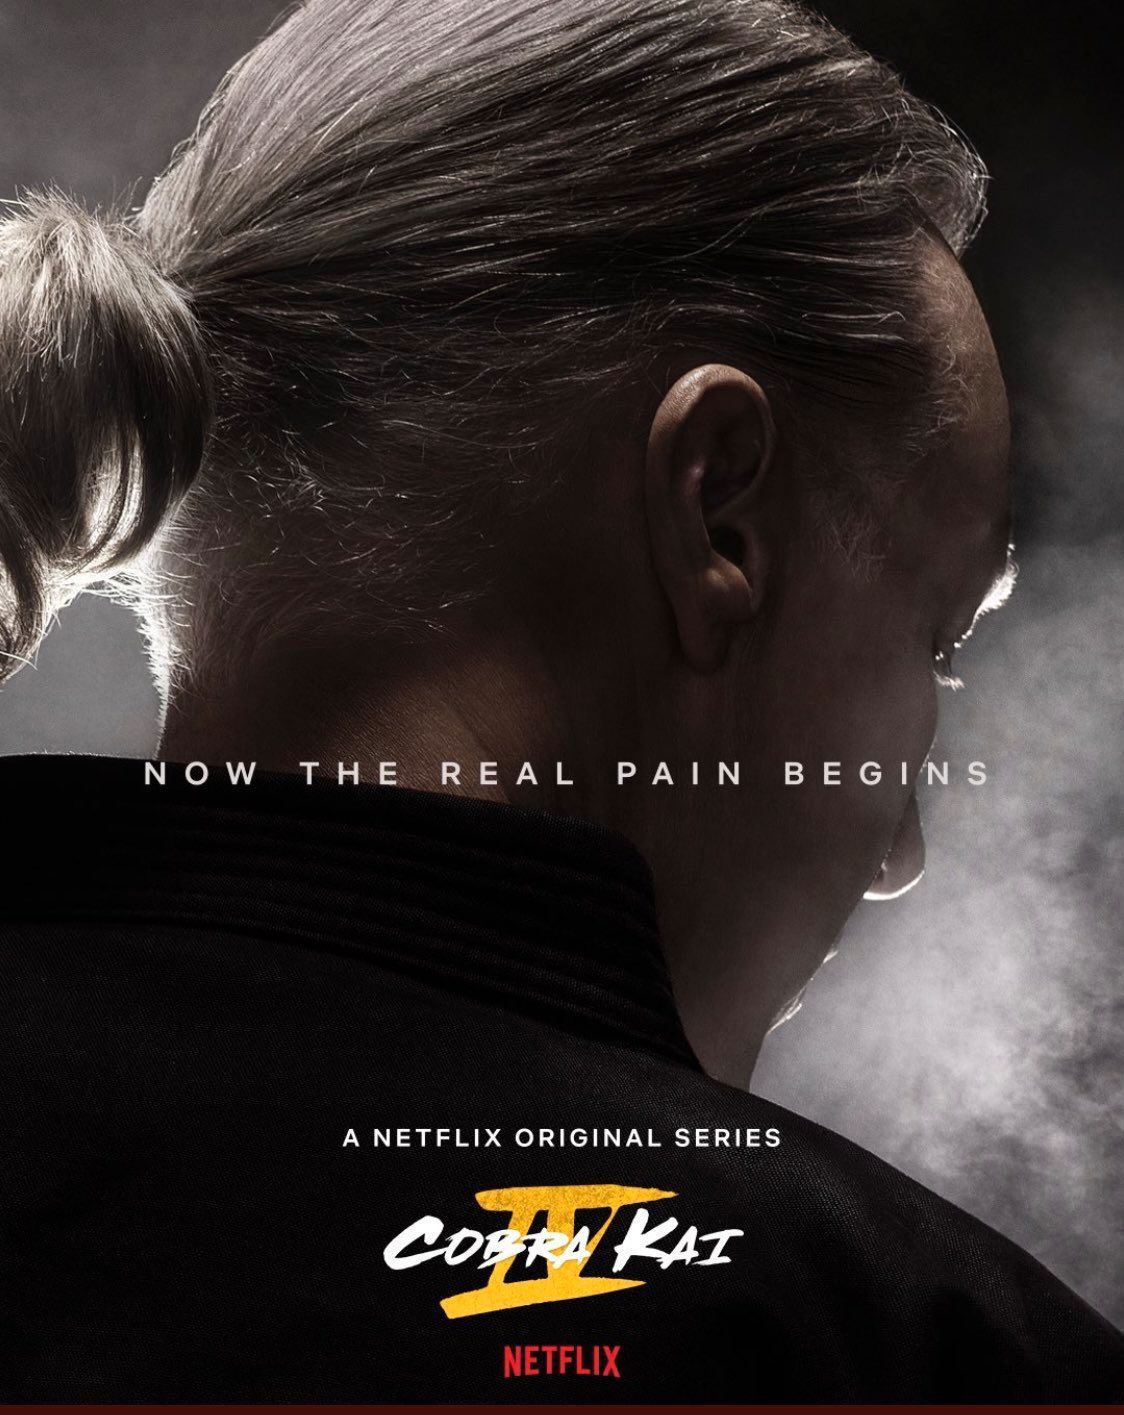 Poster Cobra Kai, sezona 4, obljublja bolečino - in Terry Silver